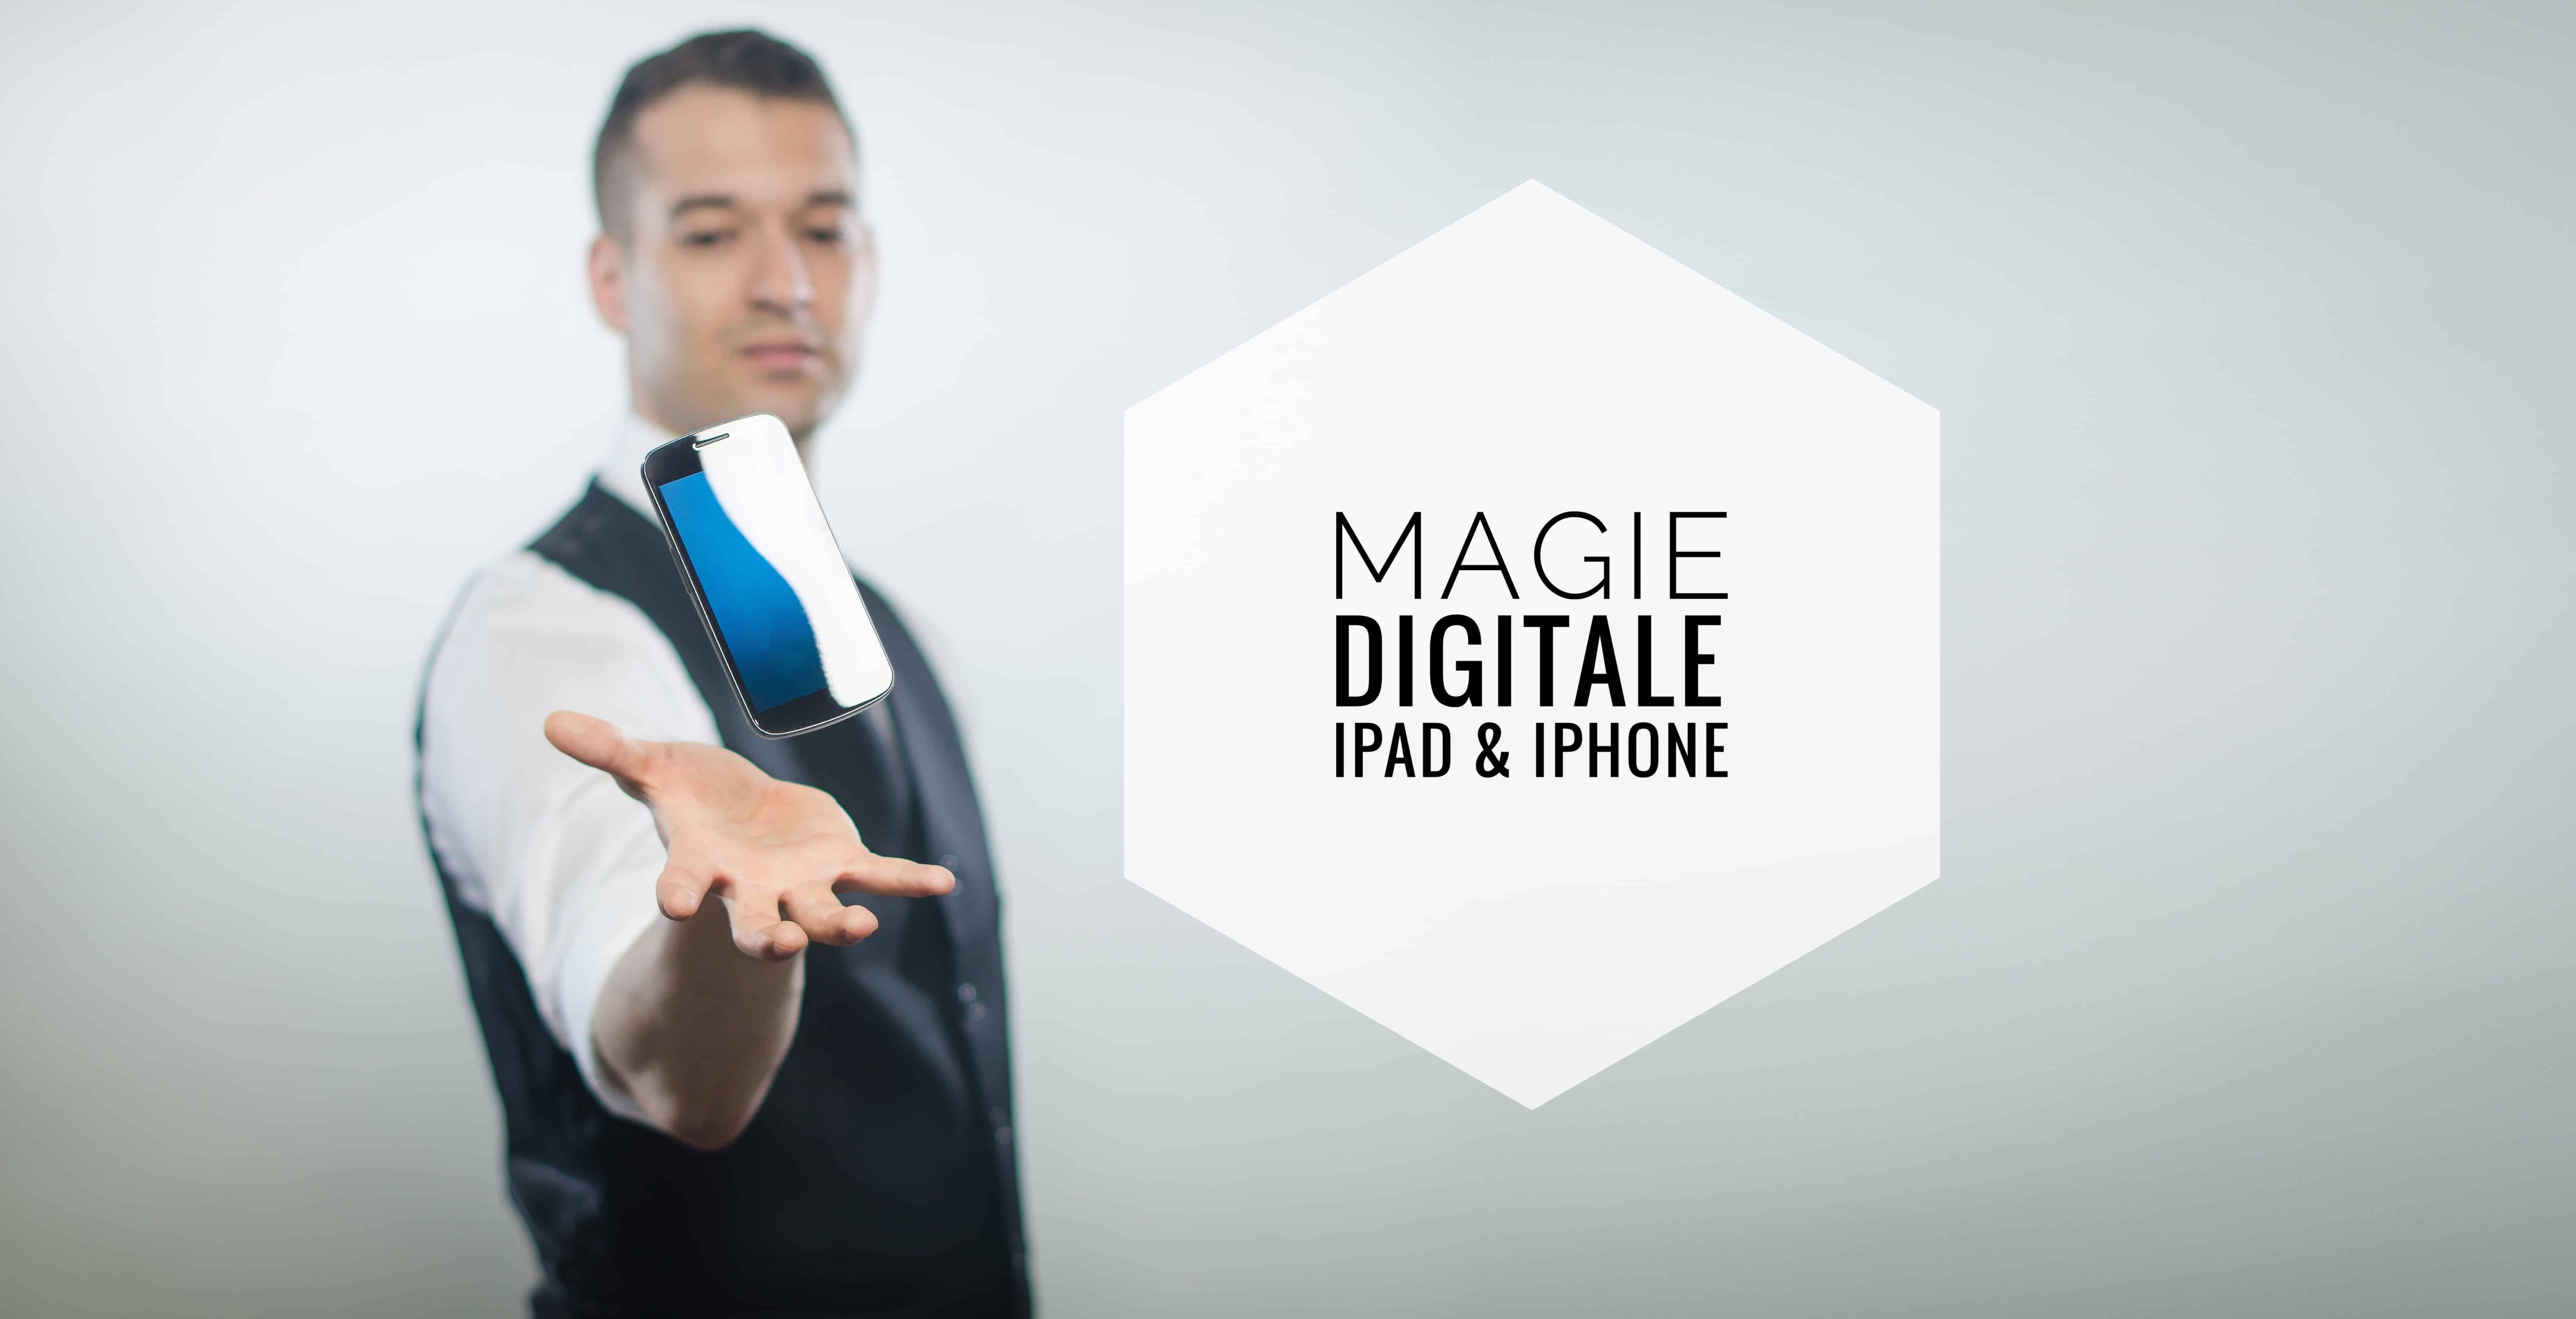 image de vinz le magicien faisant léviter un téléphone entre ses mains.